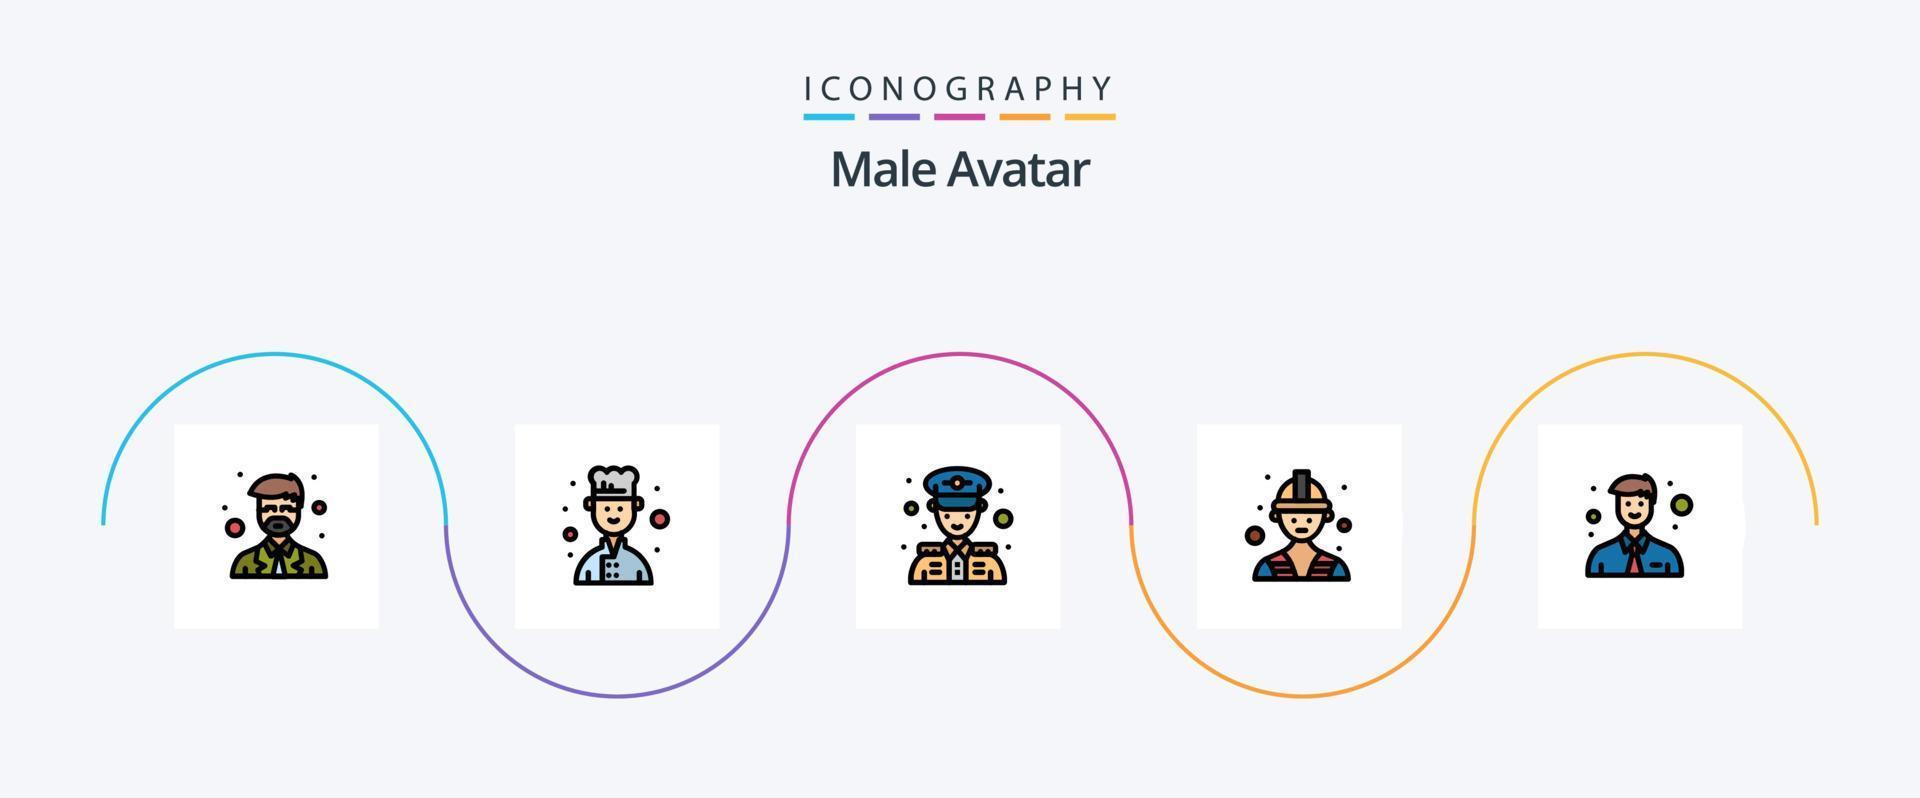 Bộ icon avatar nam dạng đặc sắc với 5 mục bao gồm văn phòng sẽ giúp bạn tạo ra hình ảnh nhân vật độc đáo và chuyên nghiệp. Với các icon được thiết kế kỹ lưỡng cho từng mục đích, bạn có thể sử dụng chúng để tạo ra các bức ảnh độc đáo cho công việc hoặc chia sẻ trên mạng xã hội. Hãy xem hình ảnh để khám phá bộ icon avatar nam này.